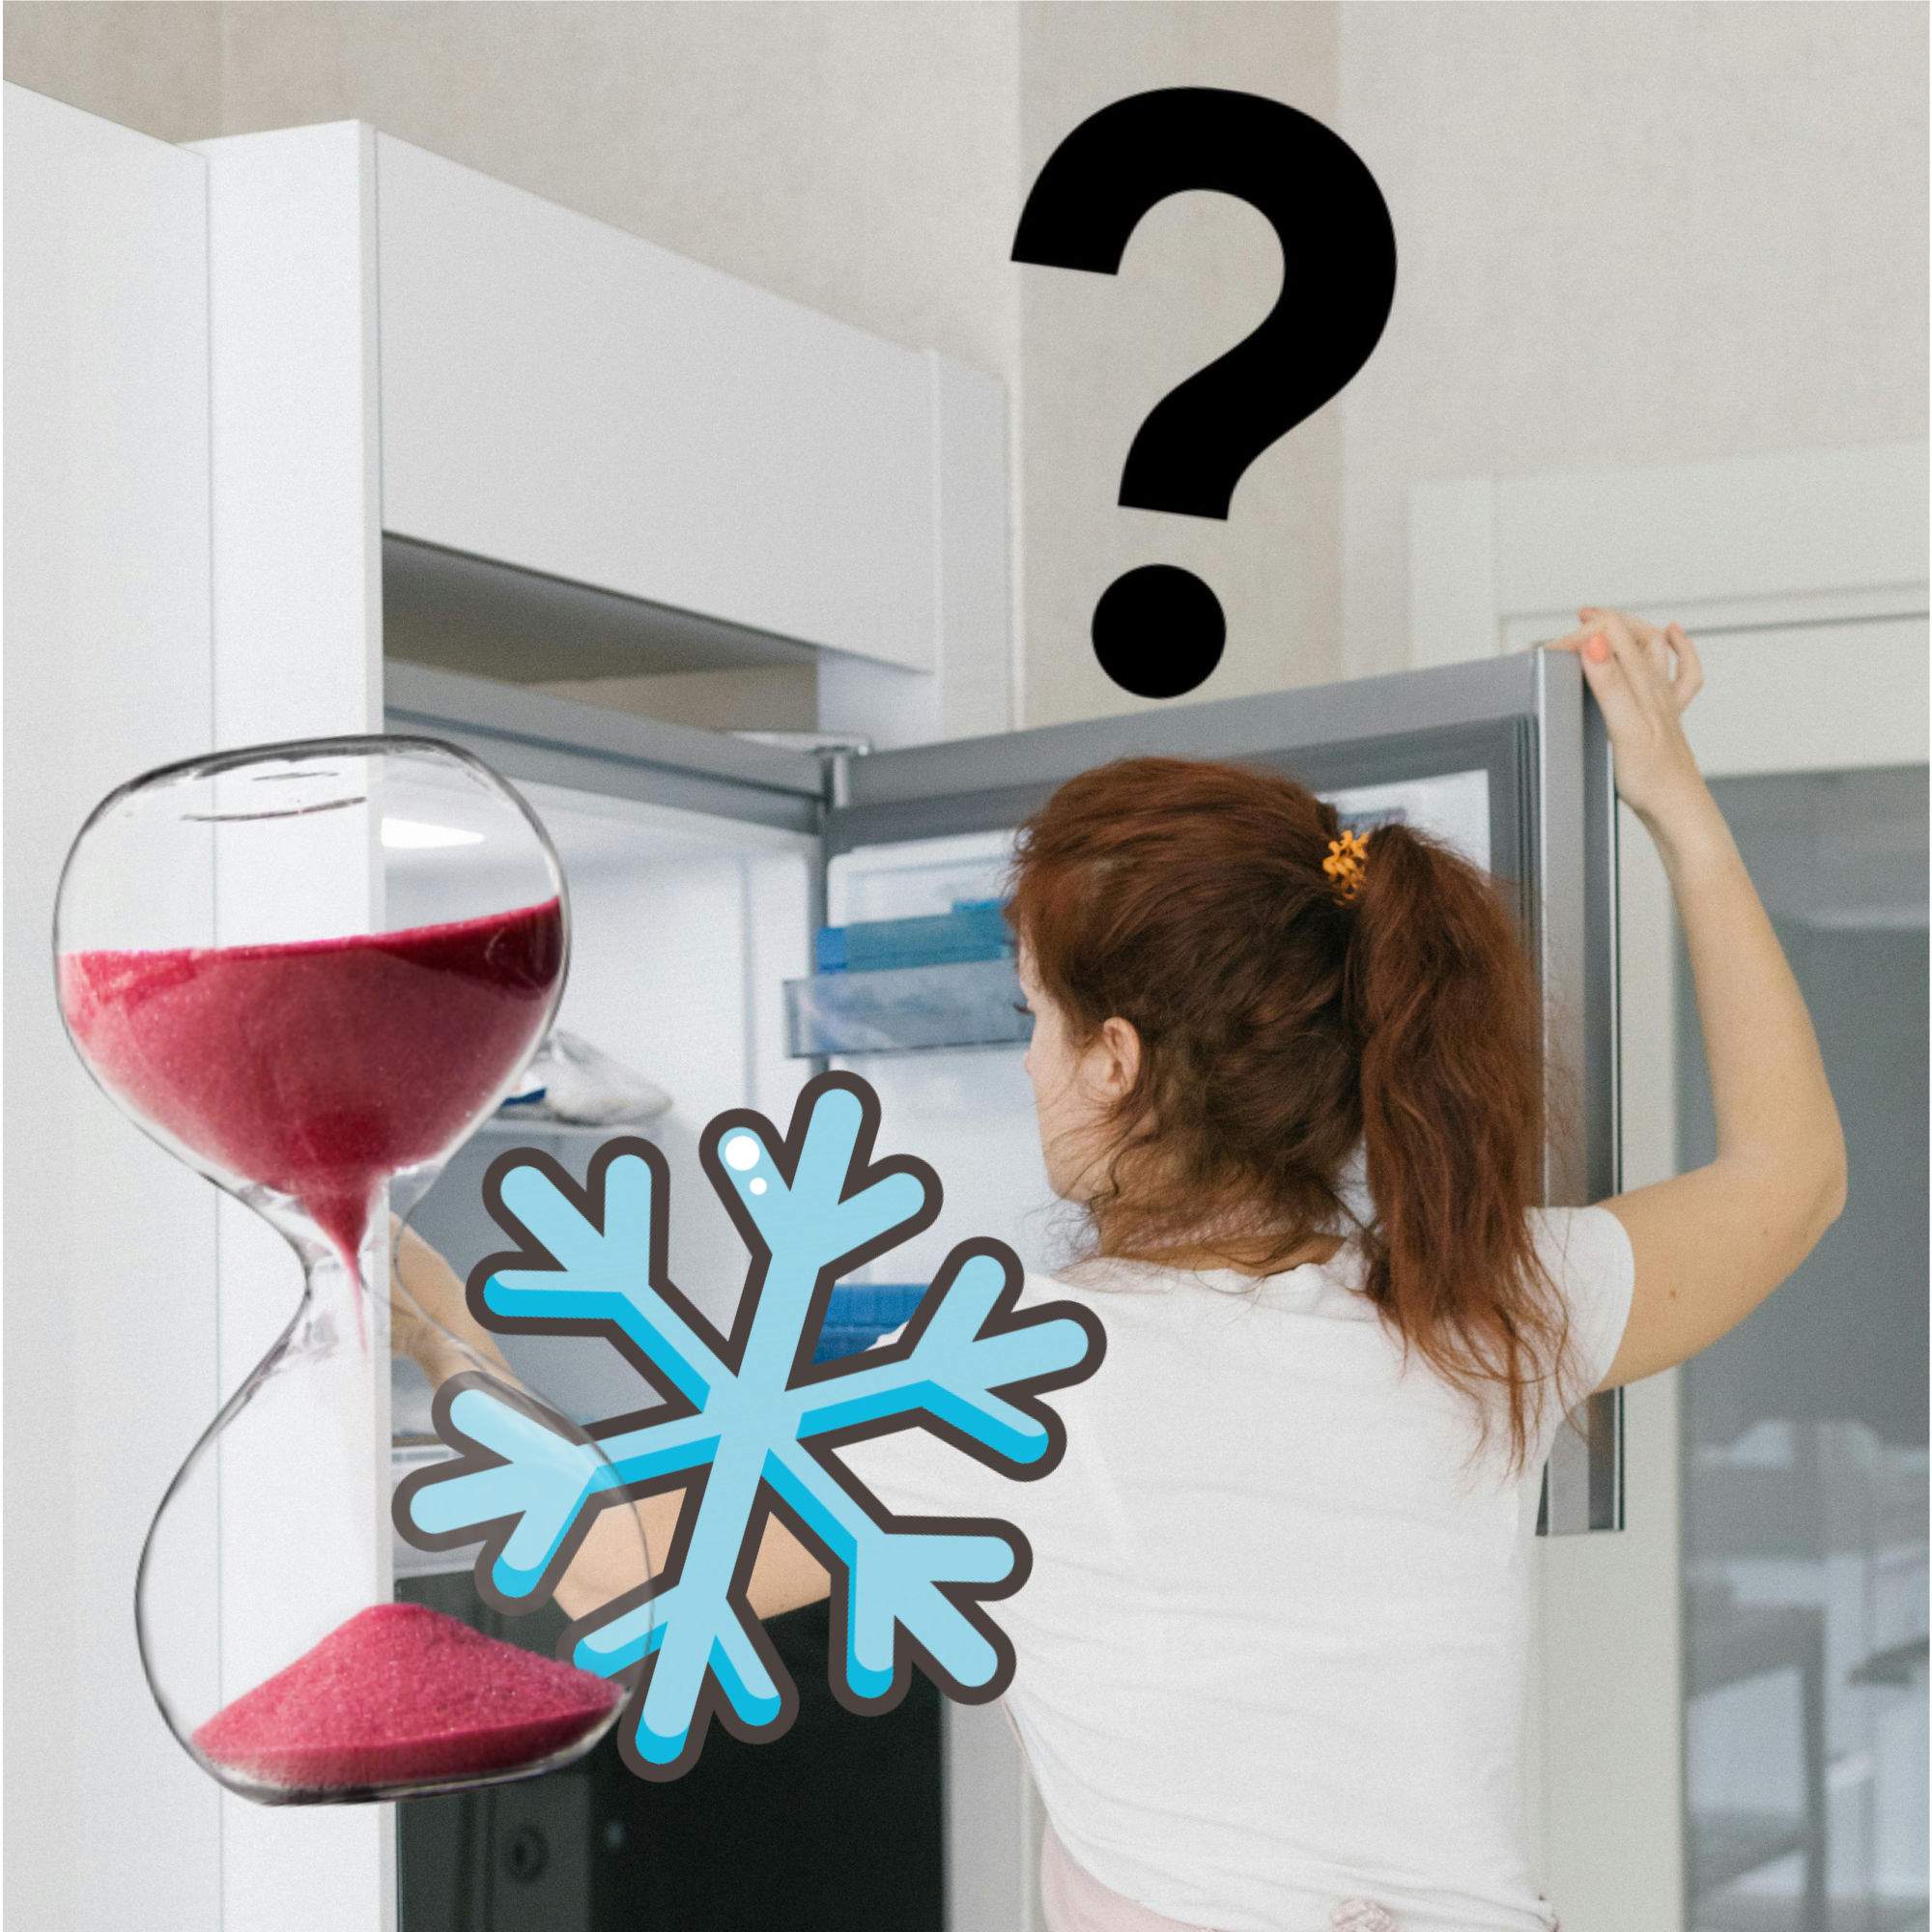 Este es el tiempo que puedes tener cada alimento en el congelador